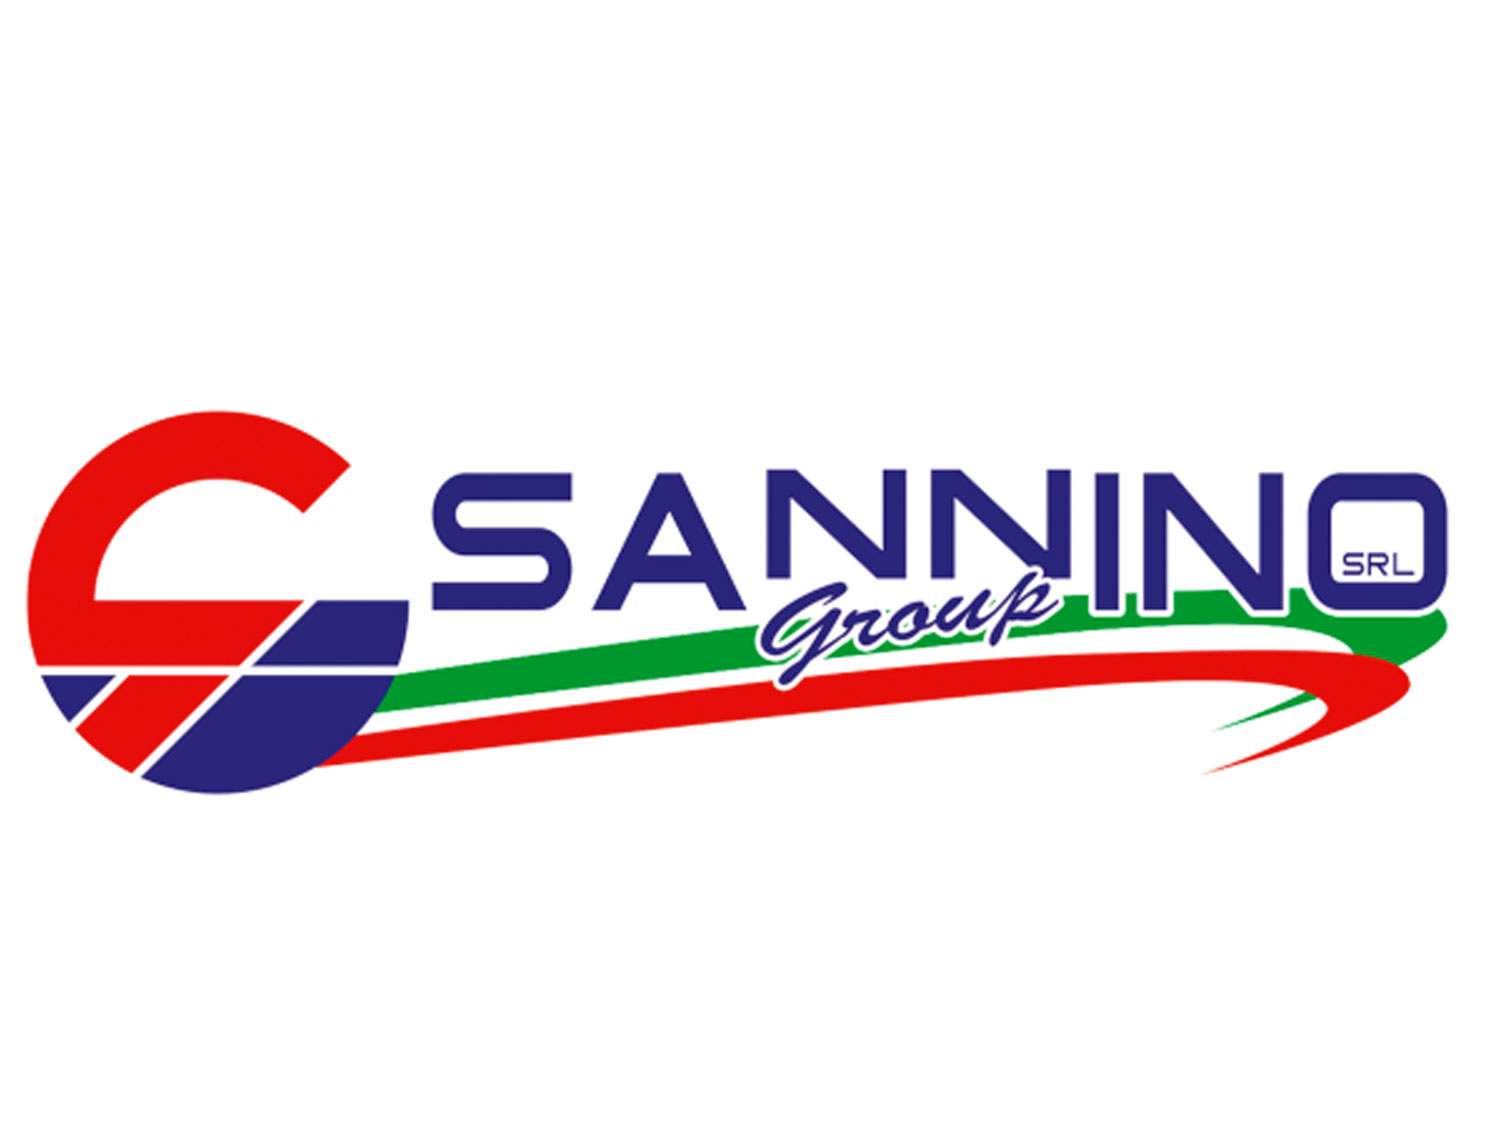 Sannino